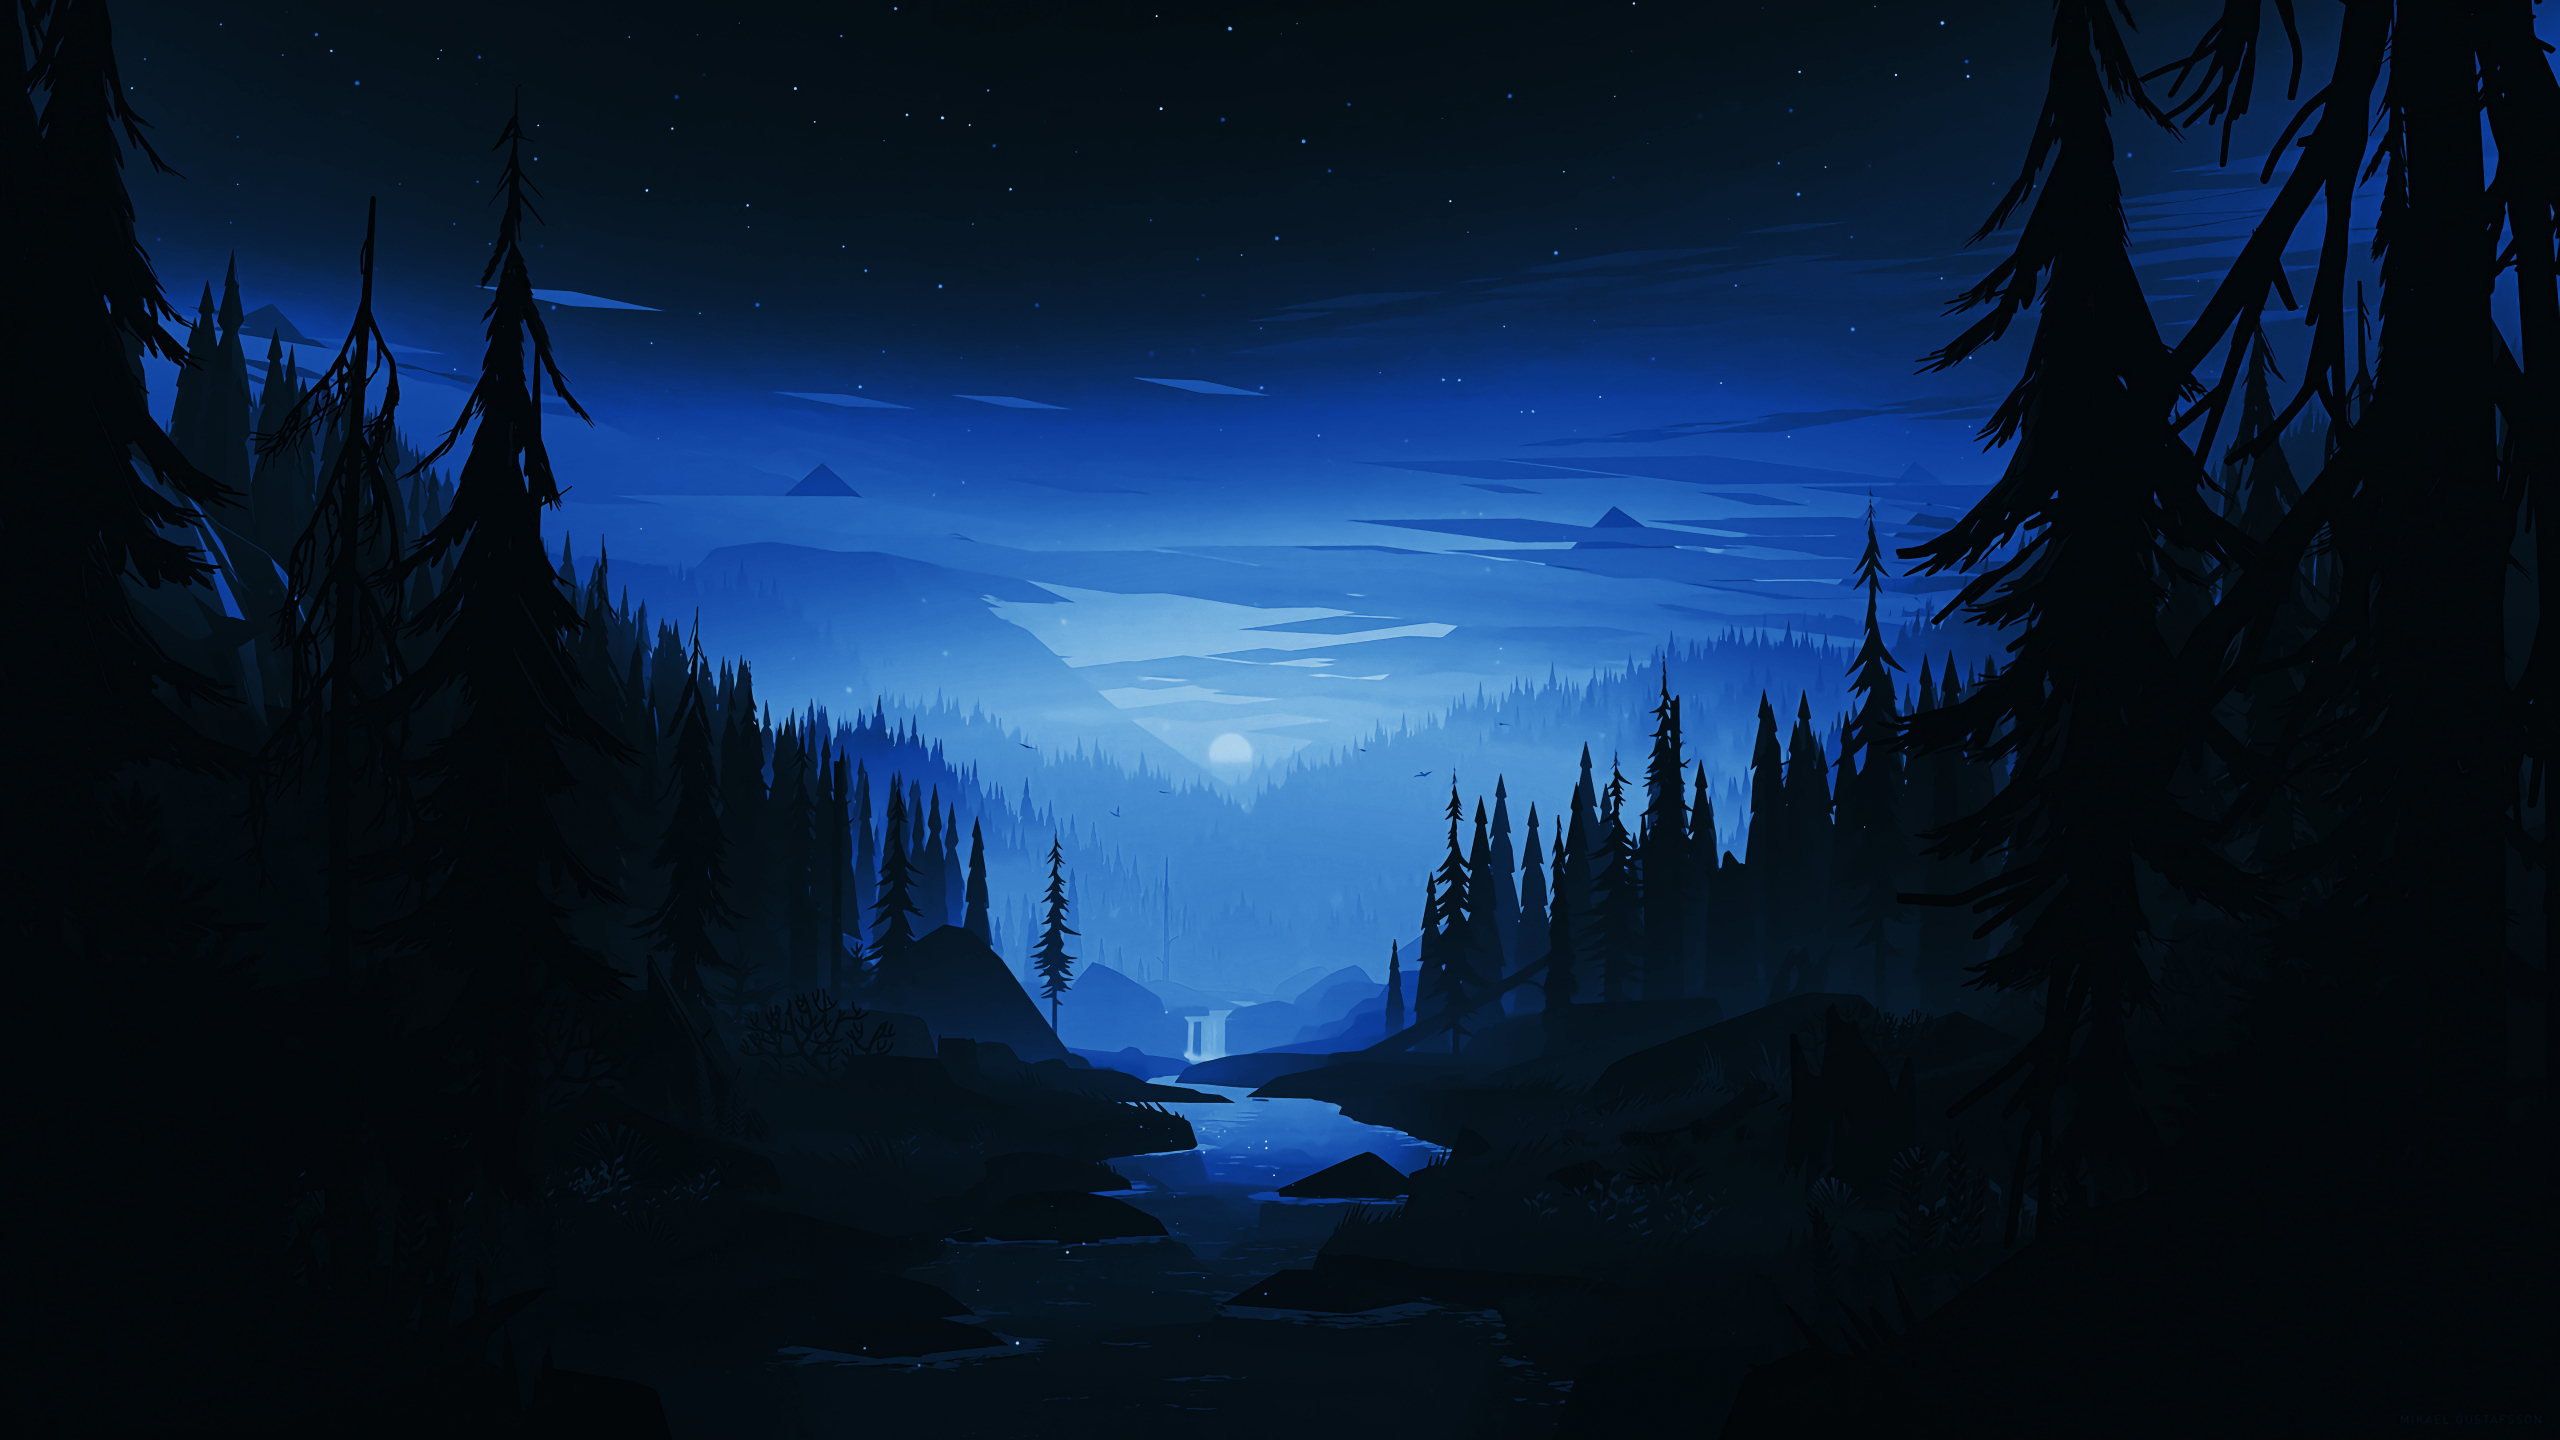 Đêm tối sông rừng tối giản là hình ảnh đầy sức hút và ấn tượng. Với cách chụp mới mẻ và tinh tế, bạn có thể nhìn thấy tất cả những gì mà đêm tối mang lại. Hãy cùng đón xem hình ảnh liên quan để cảm nhận được sự đặc biệt của nó.